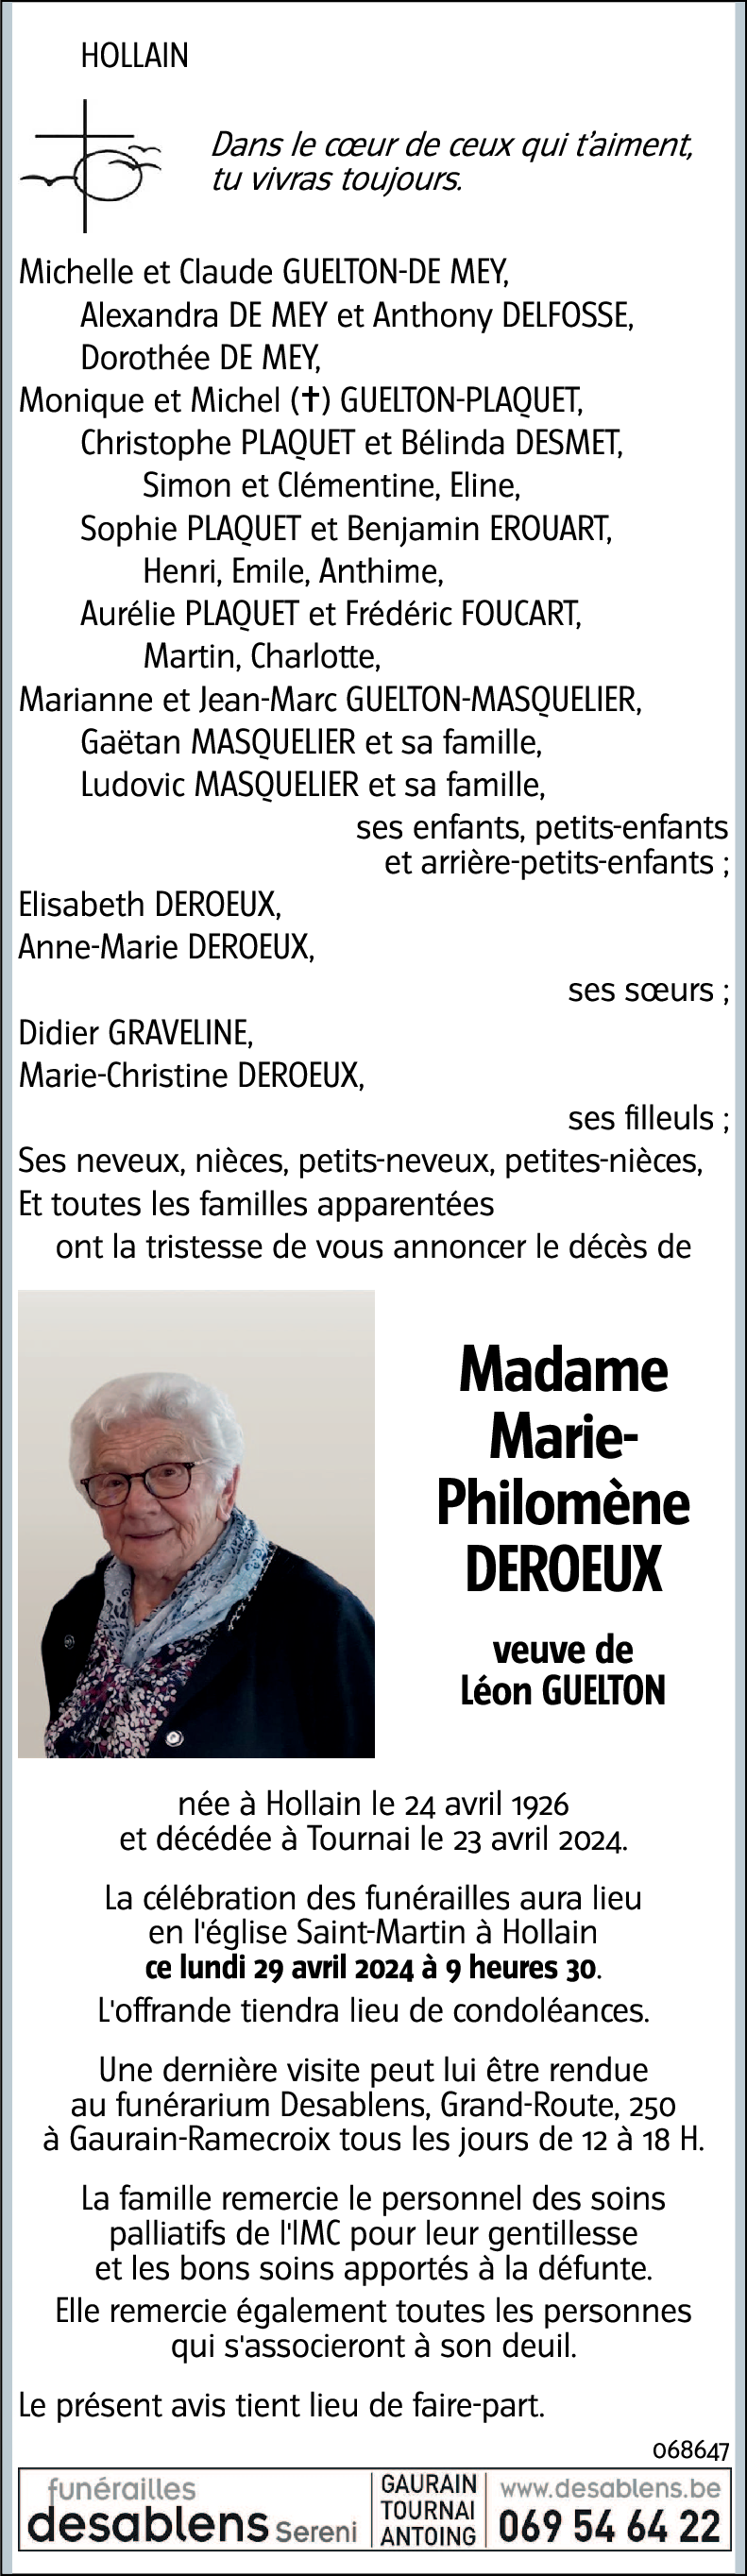 Marie-Philomène Deroeux